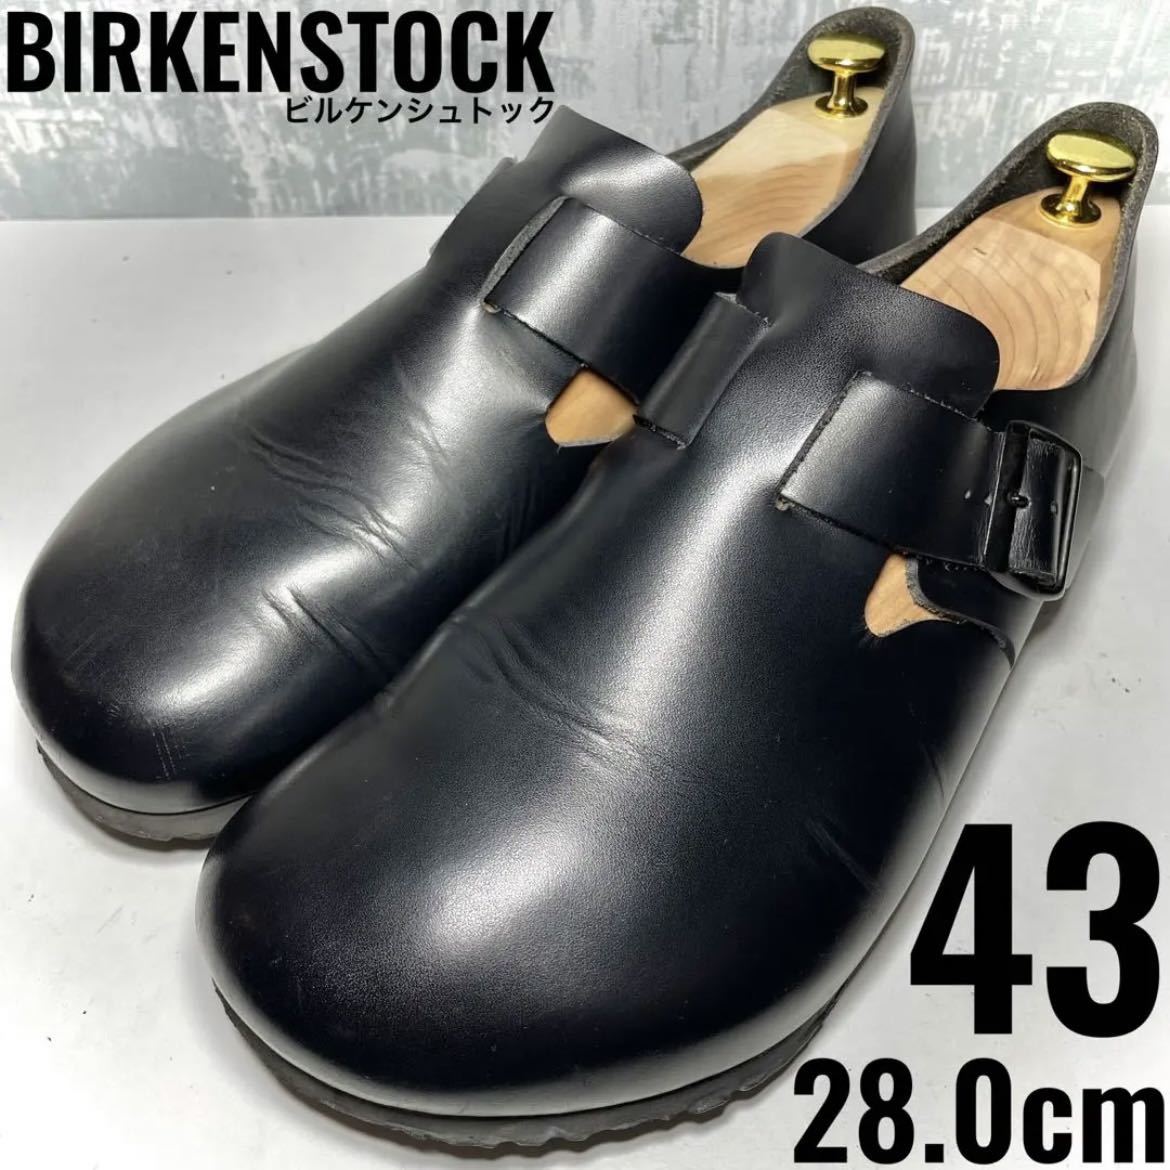 熱い販売 ロンドン ビルケンシュトック 【LONDON！】BIRKENSTOCK 43 本革 Germany ドイツ レザーシューズ 黒 ブラック  28.0cm 28.0cm